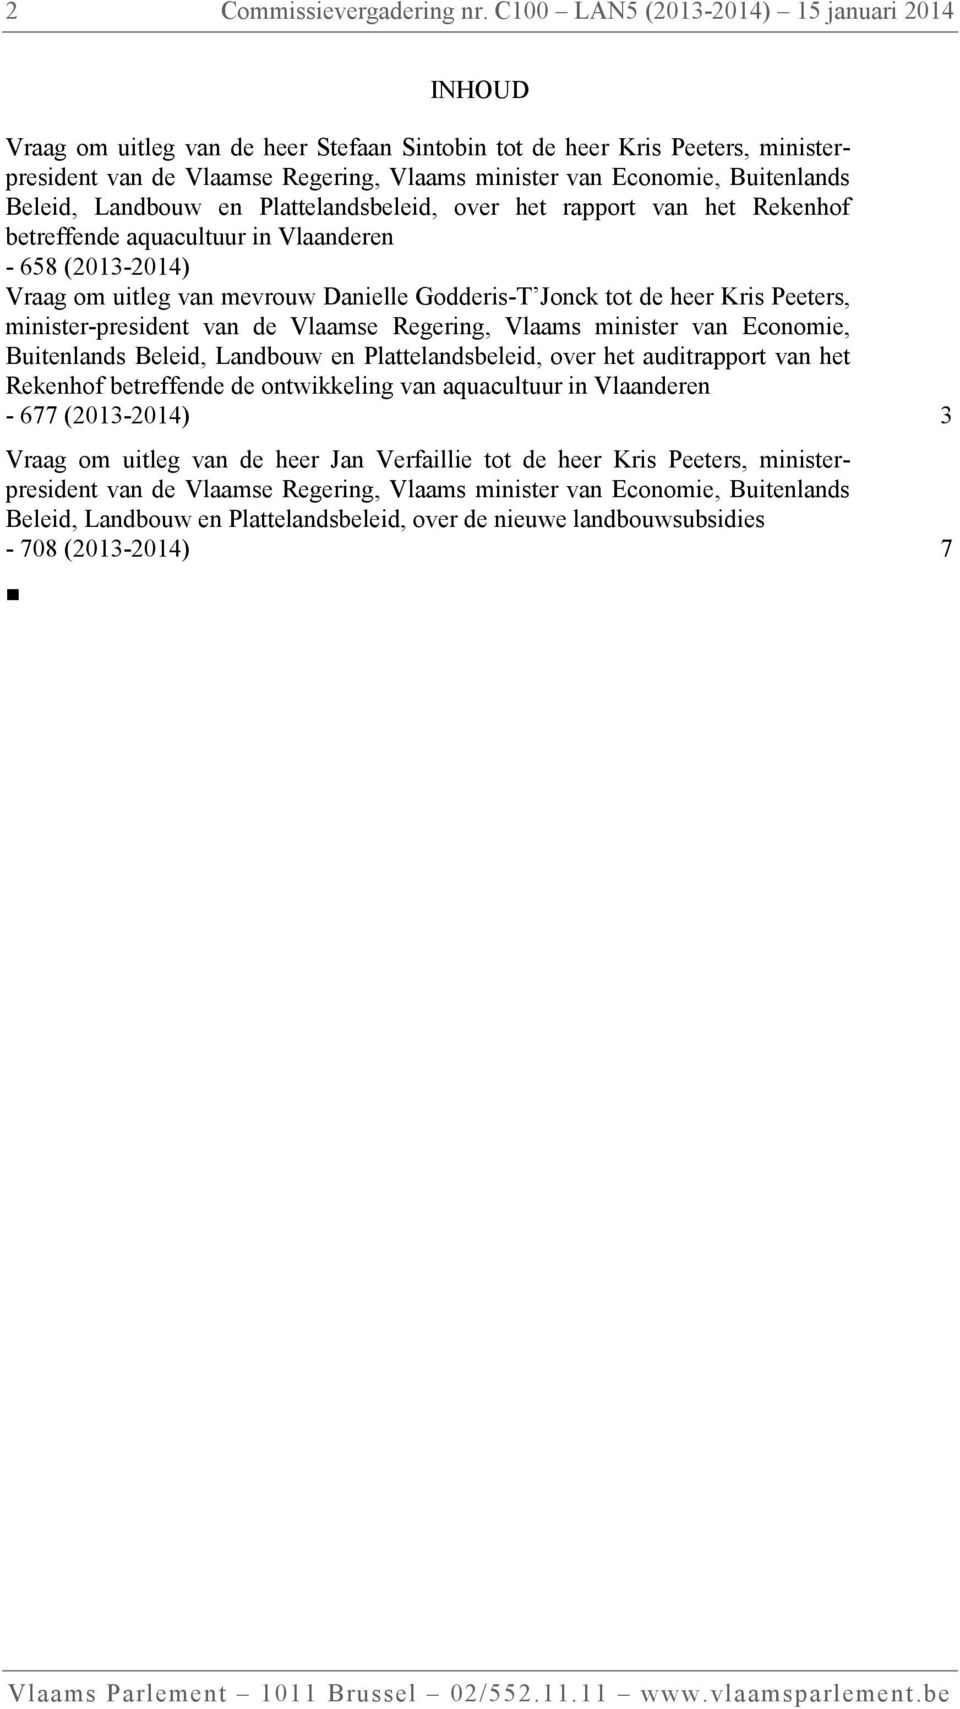 Buitenlands Beleid, Landbouw en Plattelandsbeleid, over het rapport van het Rekenhof betreffende aquacultuur in Vlaanderen - 658 (2013-2014) Vraag om uitleg van mevrouw Danielle Godderis-T Jonck tot